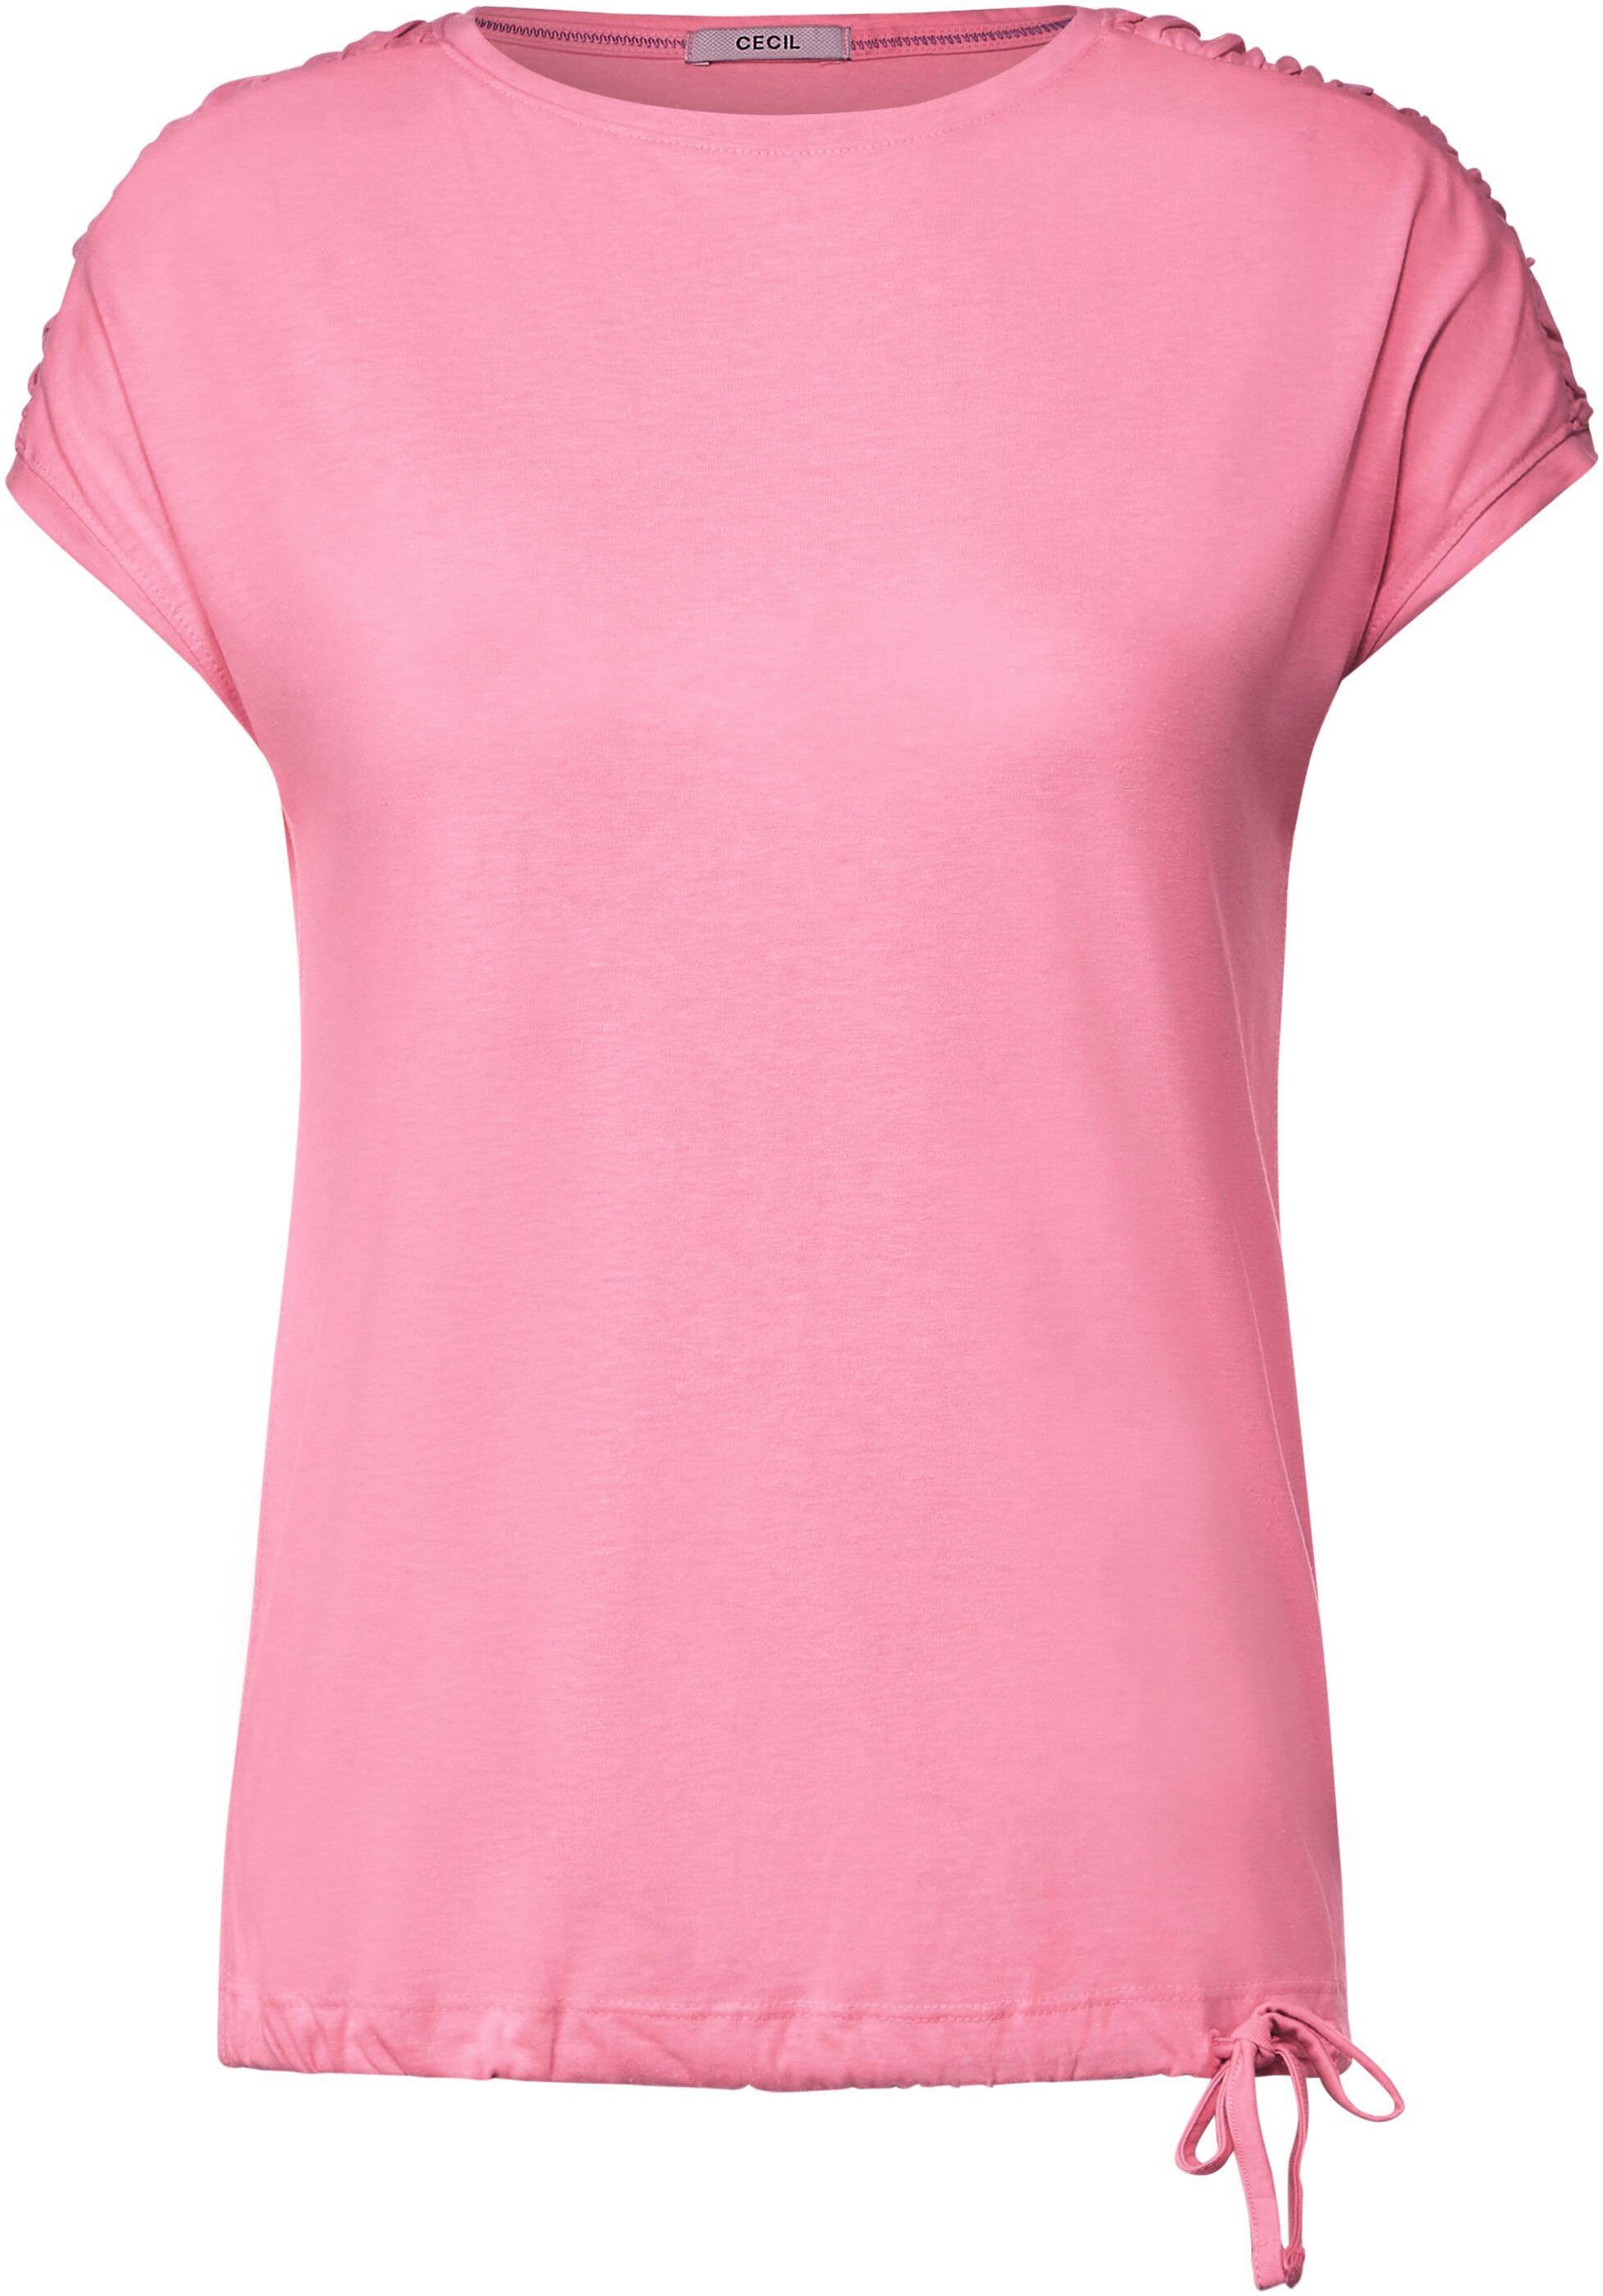 Fledermausärmeln T-Shirt Shoulder Gathering S mit soft pink Cecil NOS